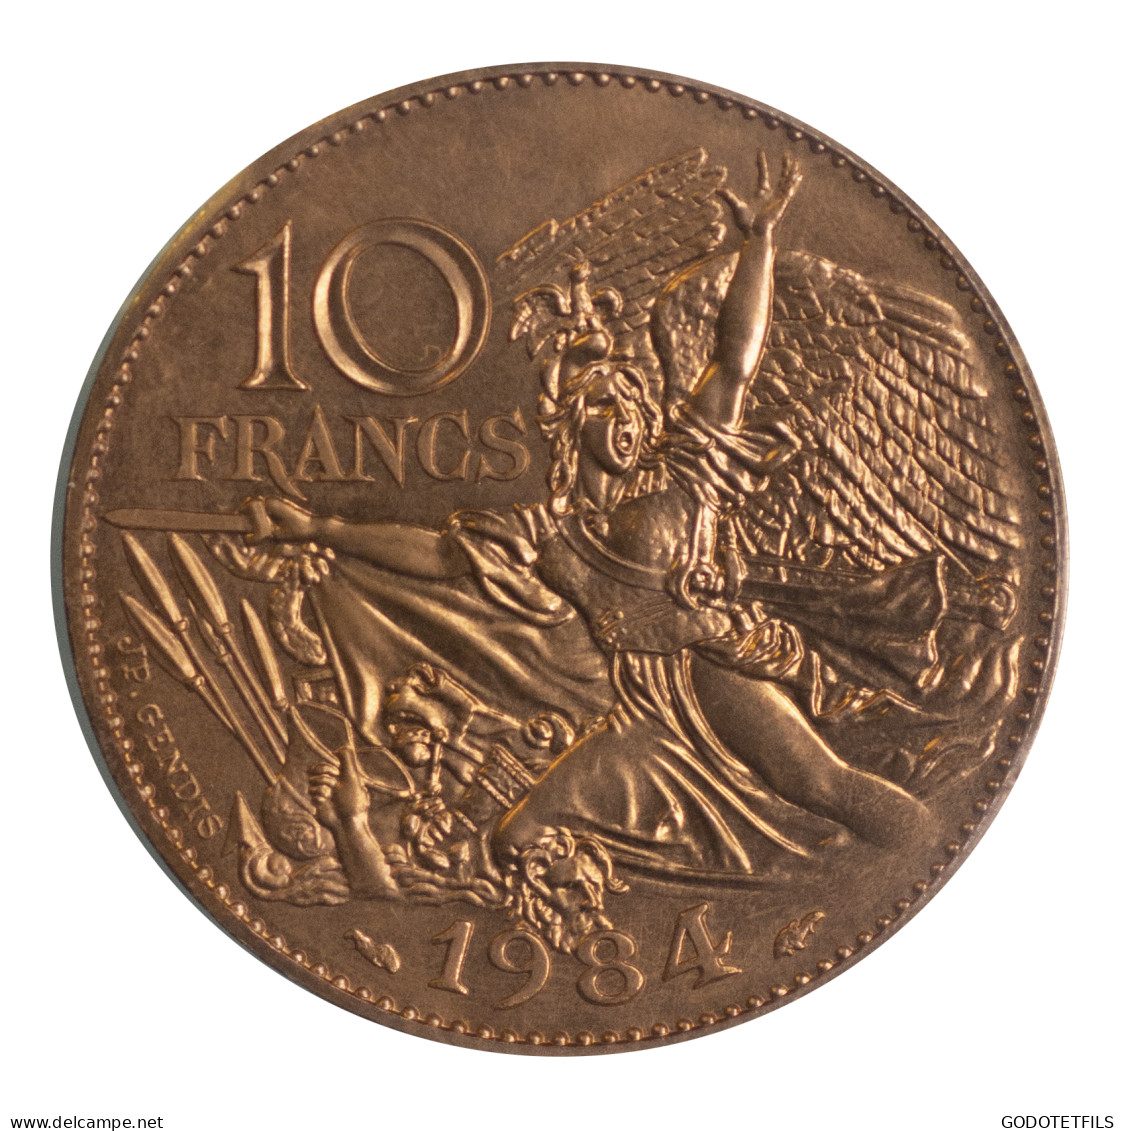 10 Francs François Rude-Essai-1984 - Pruebas